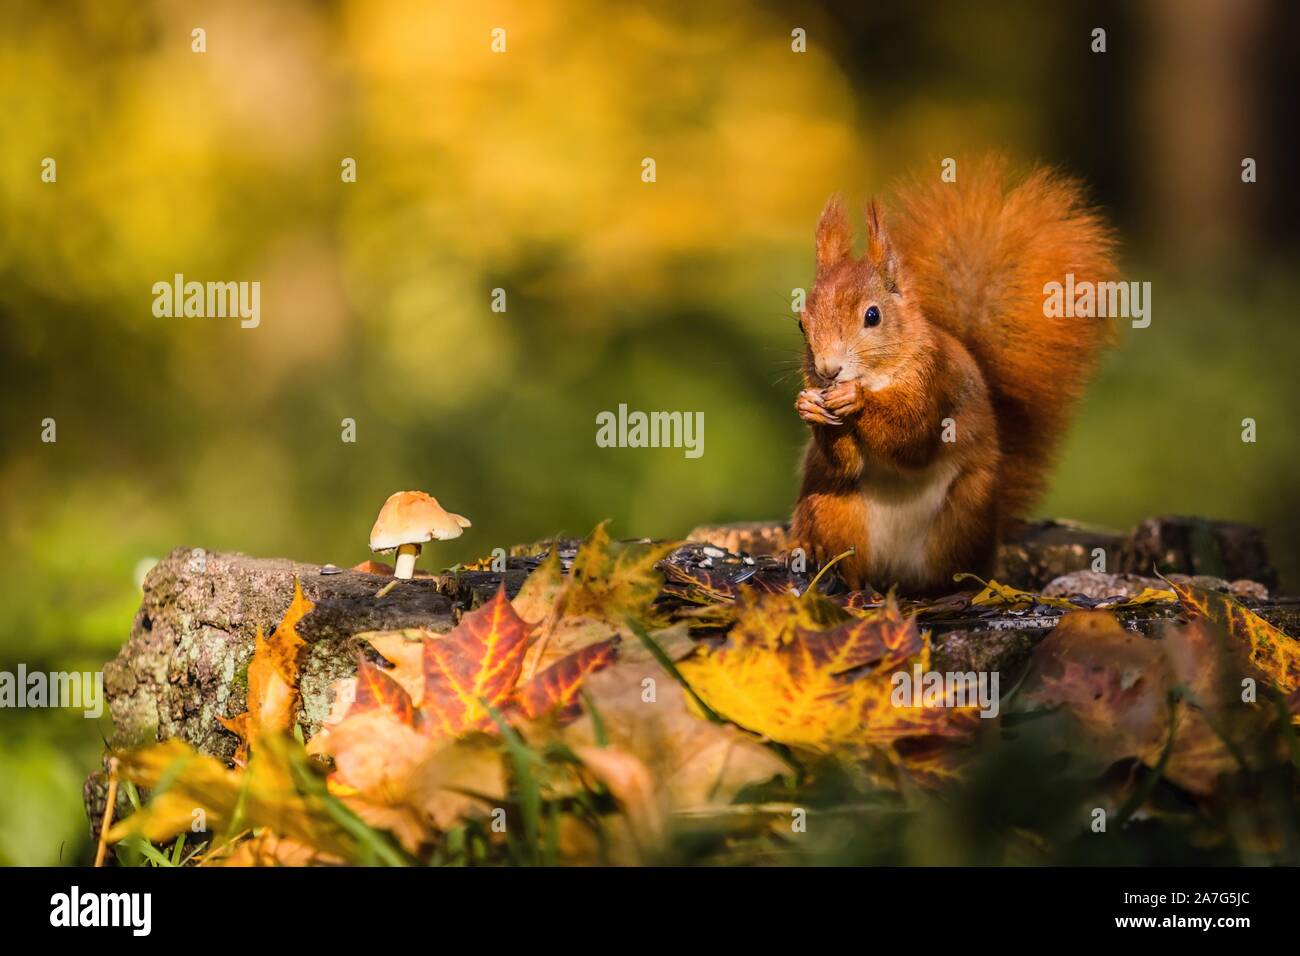 Eurasienne red squirrel avec queue pelucheuse assis sur une souche d'arbre couverts de feuilles colorées et d'un champignon qui se nourrissent de graines. La journée ensoleillée d'automne. Banque D'Images